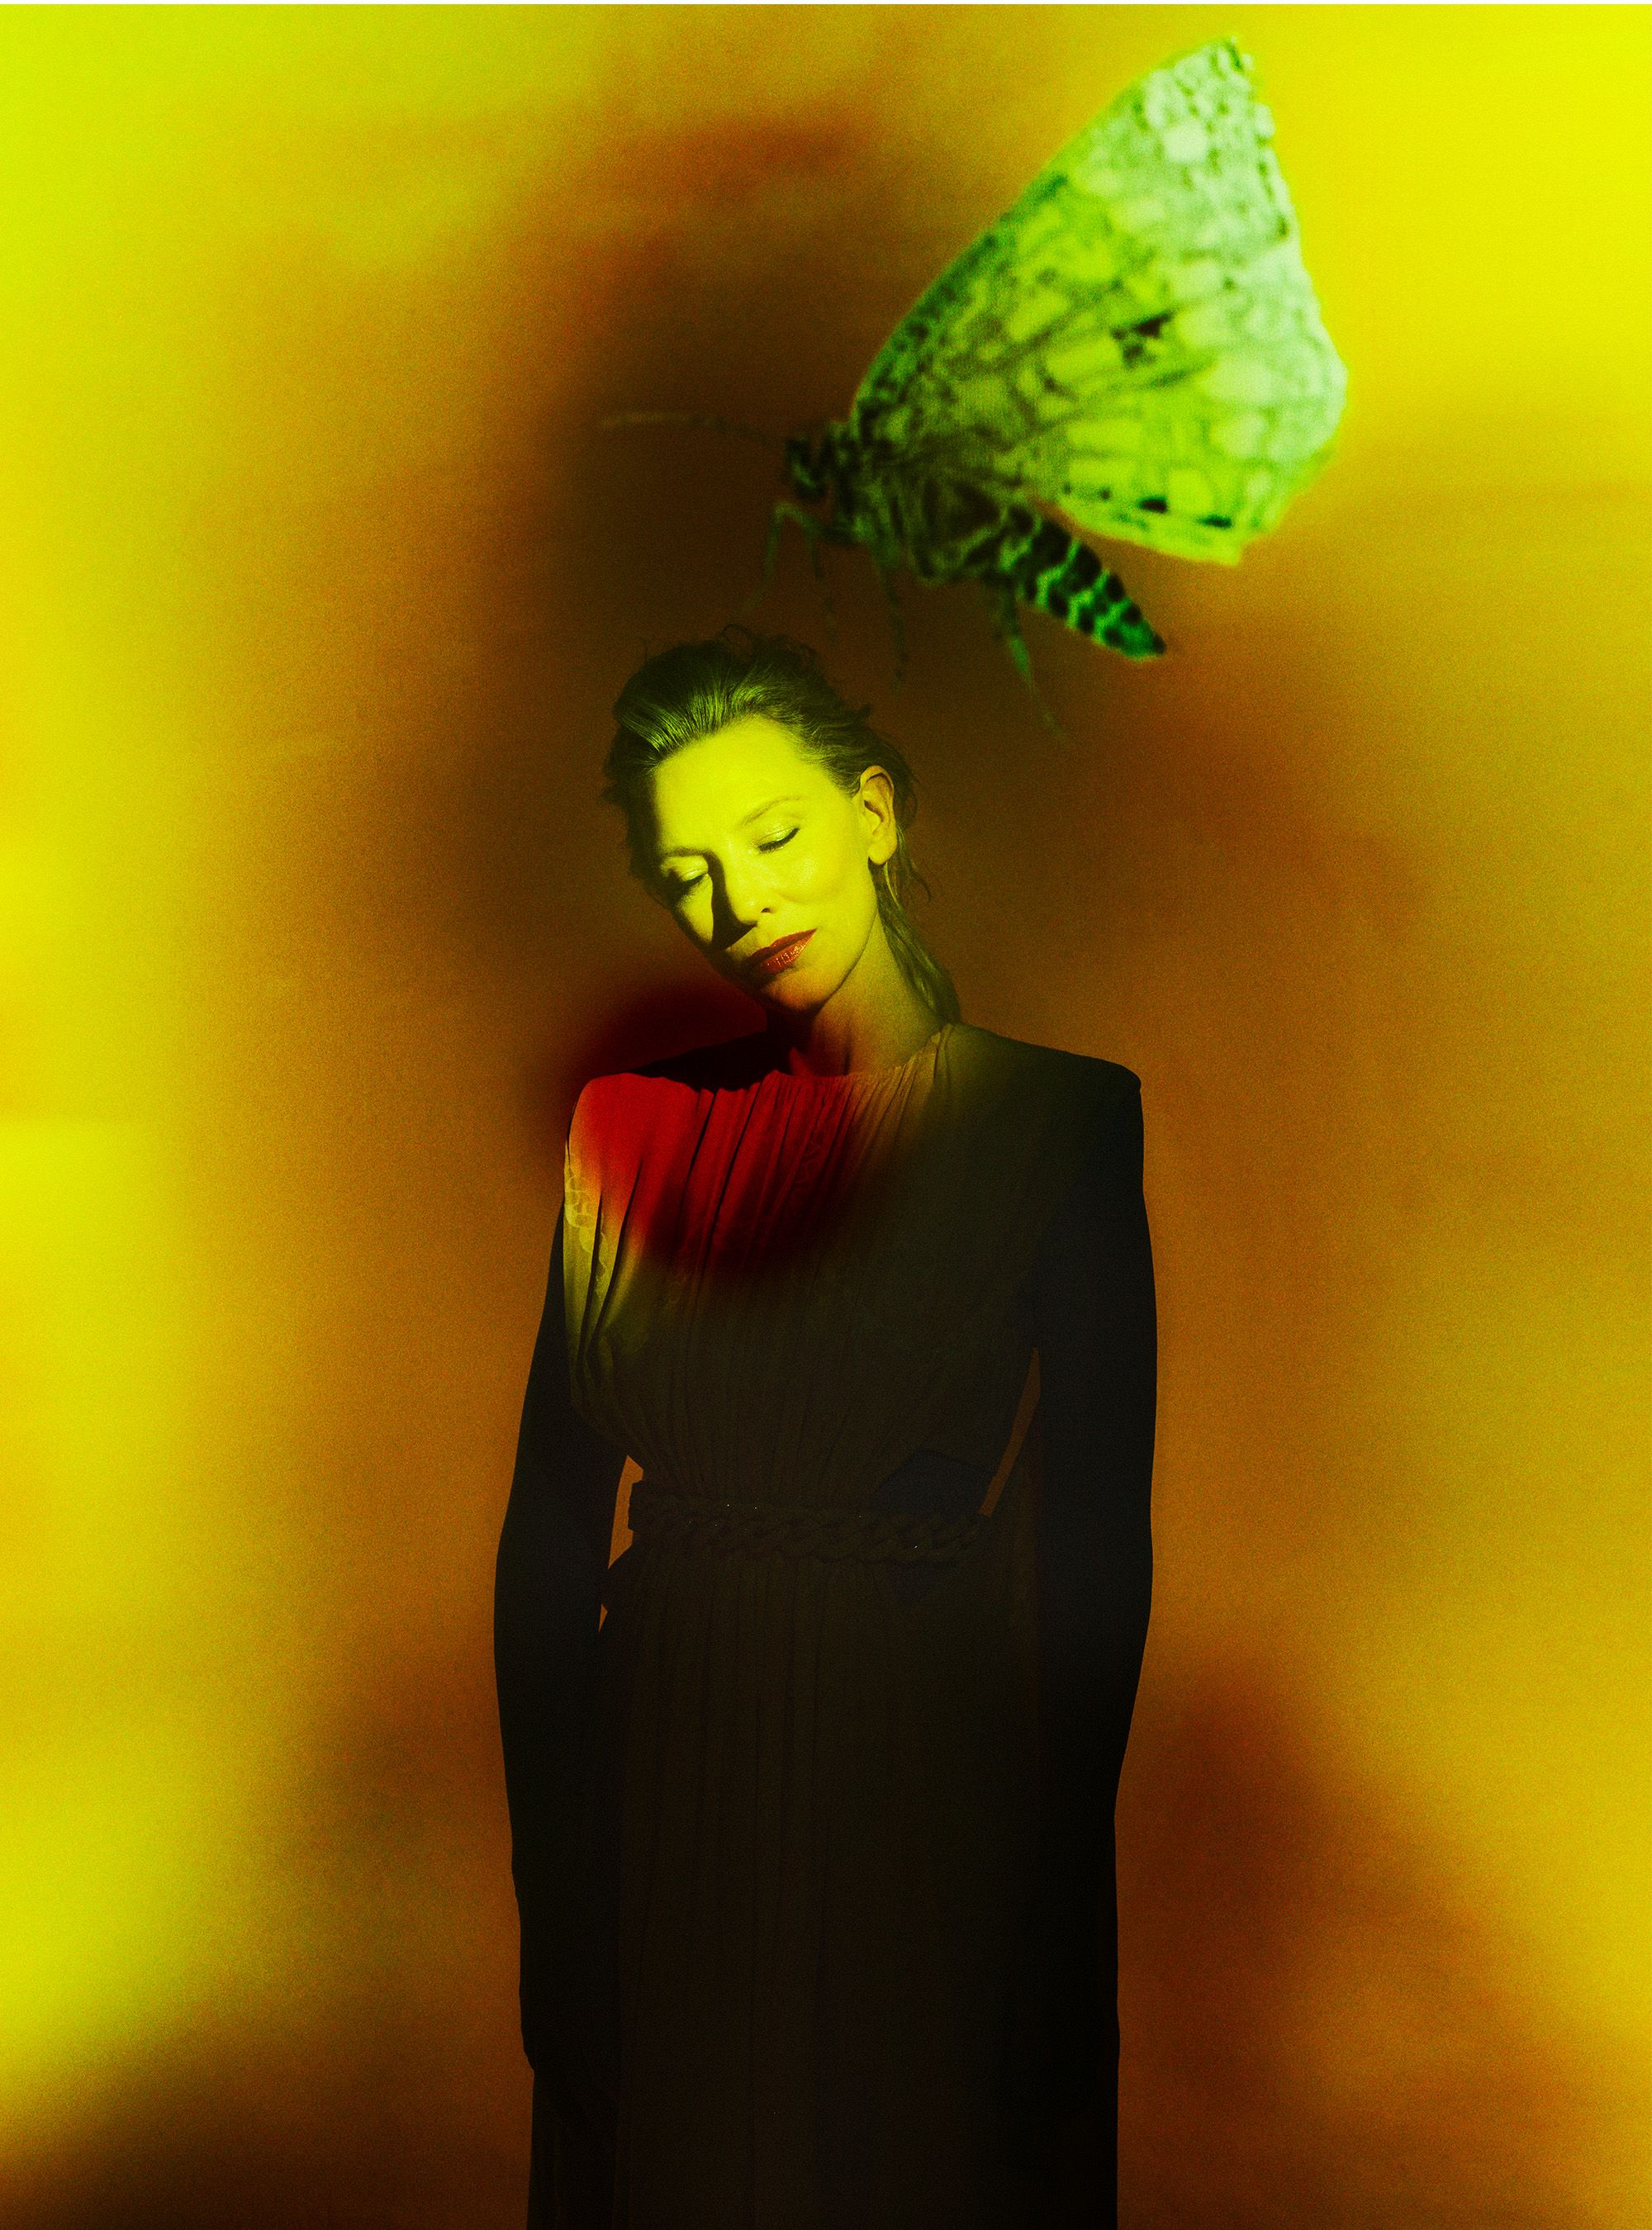 Artist Es Devlin collaborates with Cate Blanchett for Harper's Bazaar